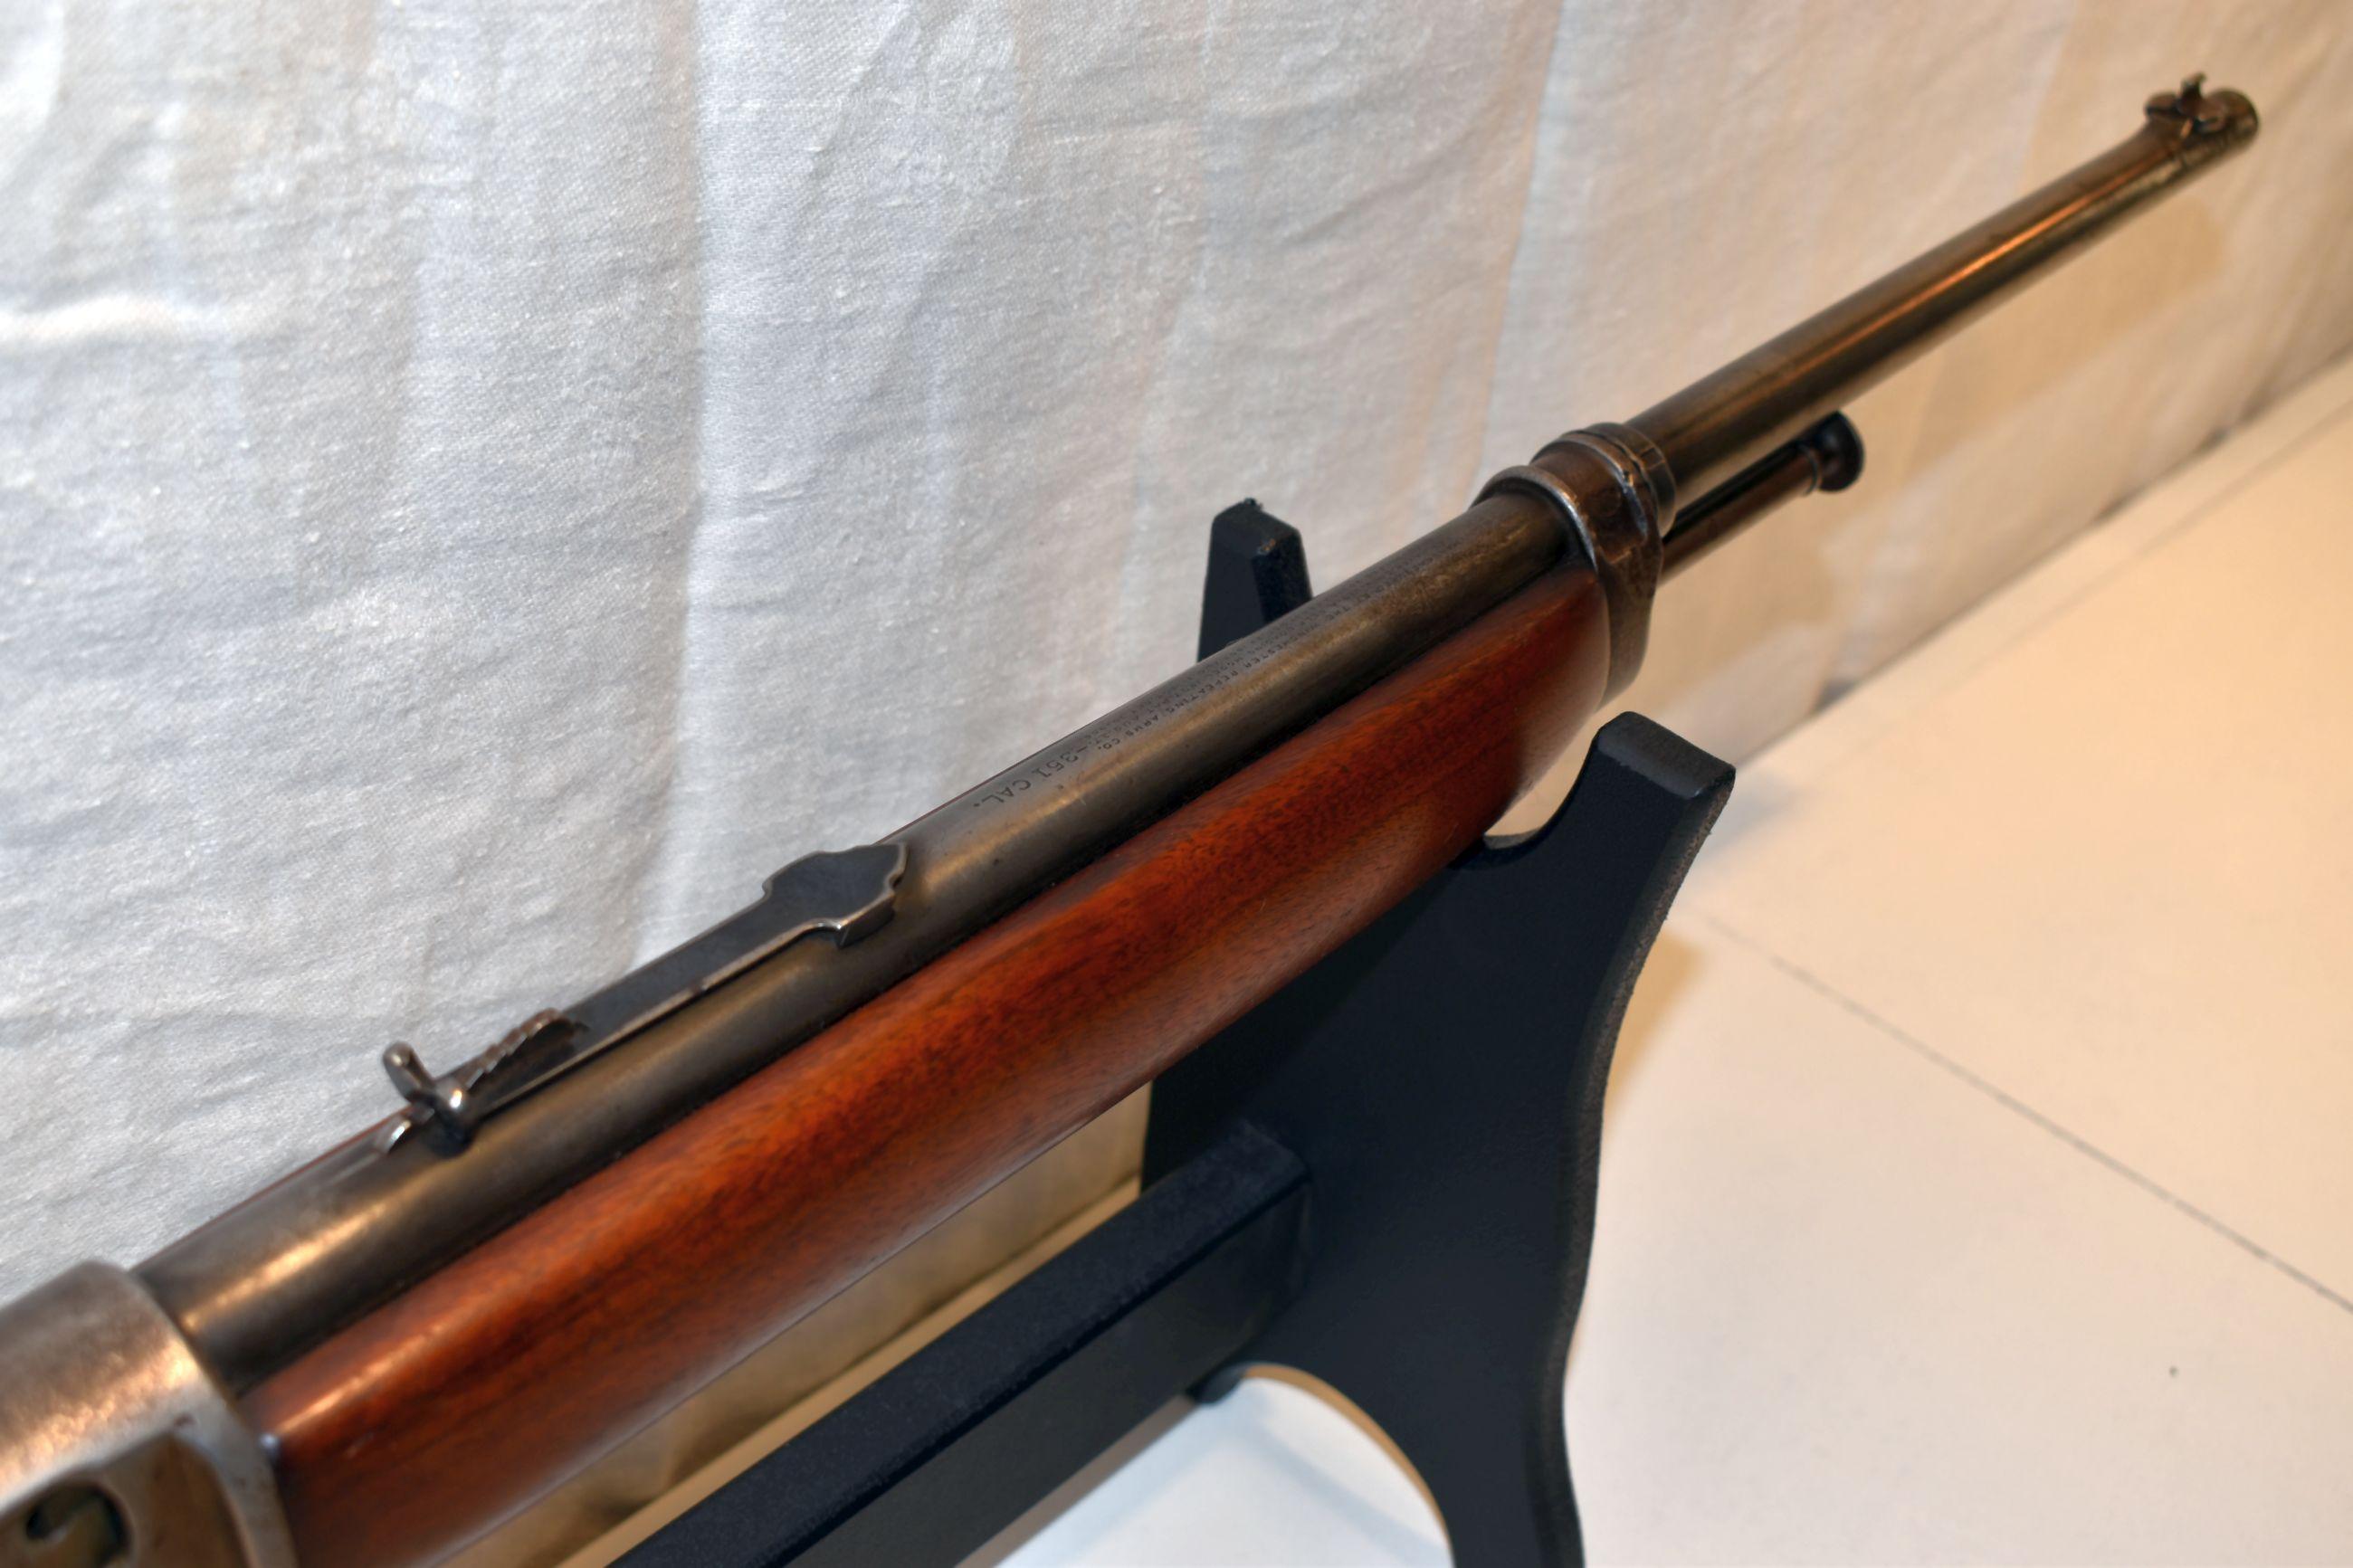 Winchester Model 1907 S.L. Semi Auto Rifle, 351 Cal., Magazine, SN: 19656, 20" Round Barrel